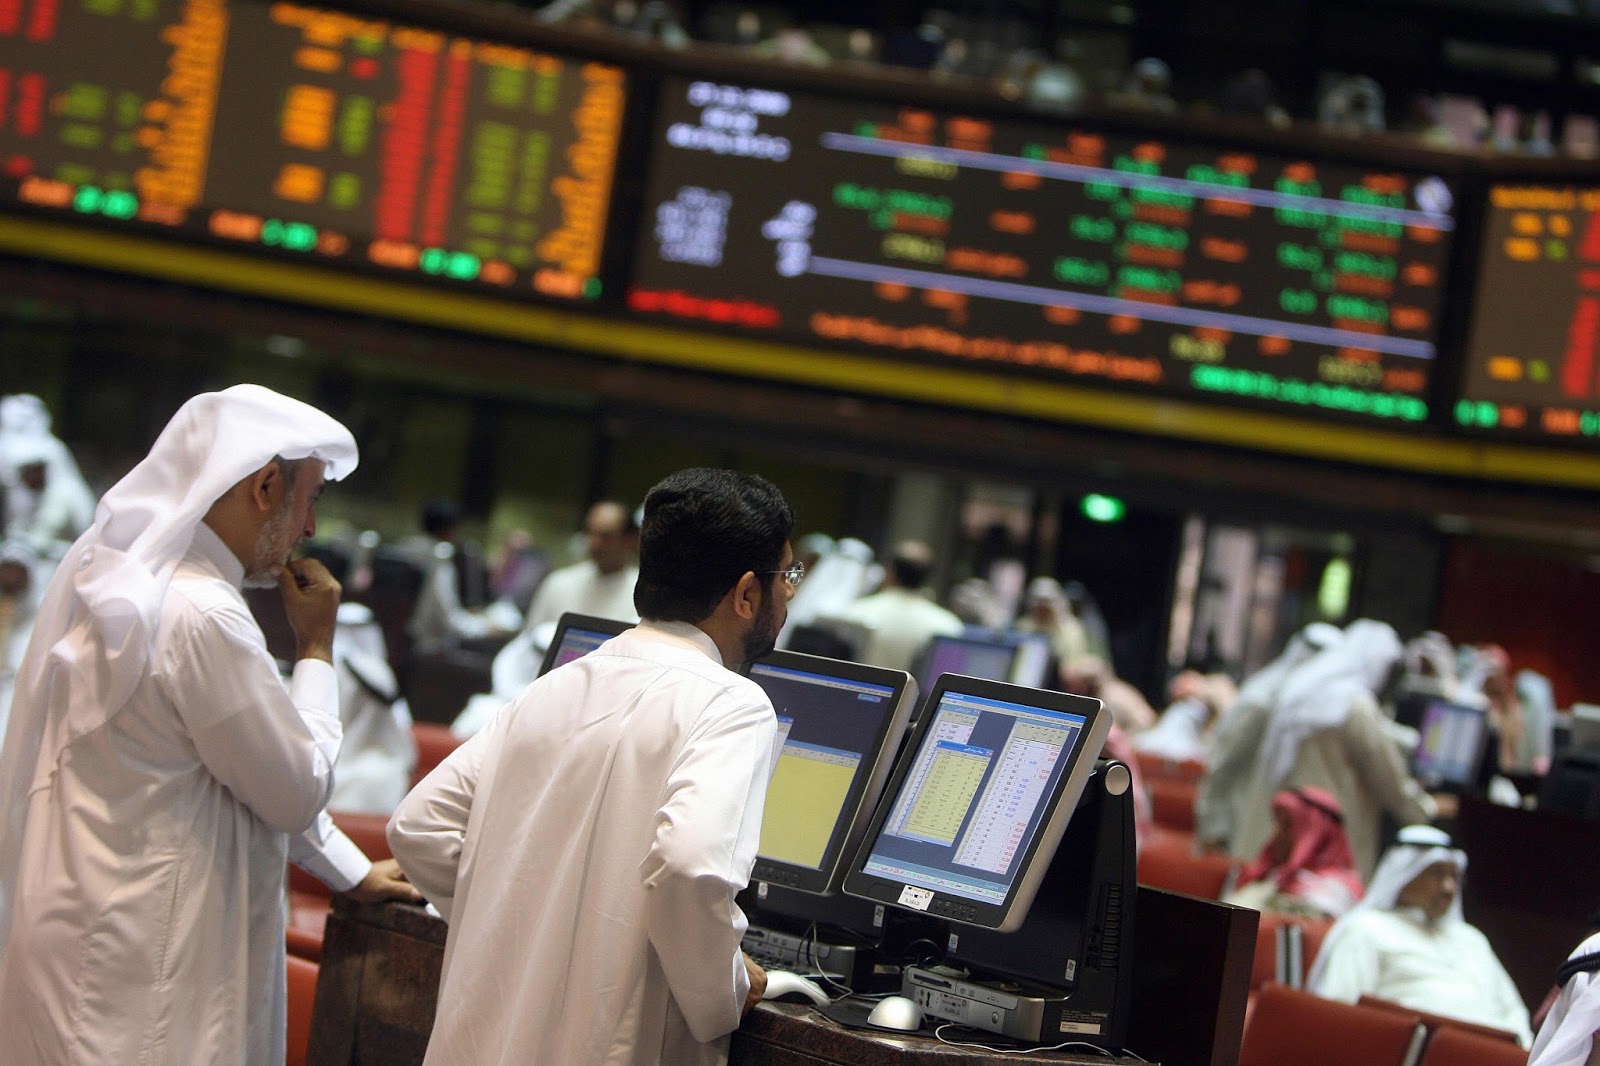 تراجع الأسهم بالبورصة السعودية والقطرية ويقابلها ارتفاع بالكويت والبحرين
